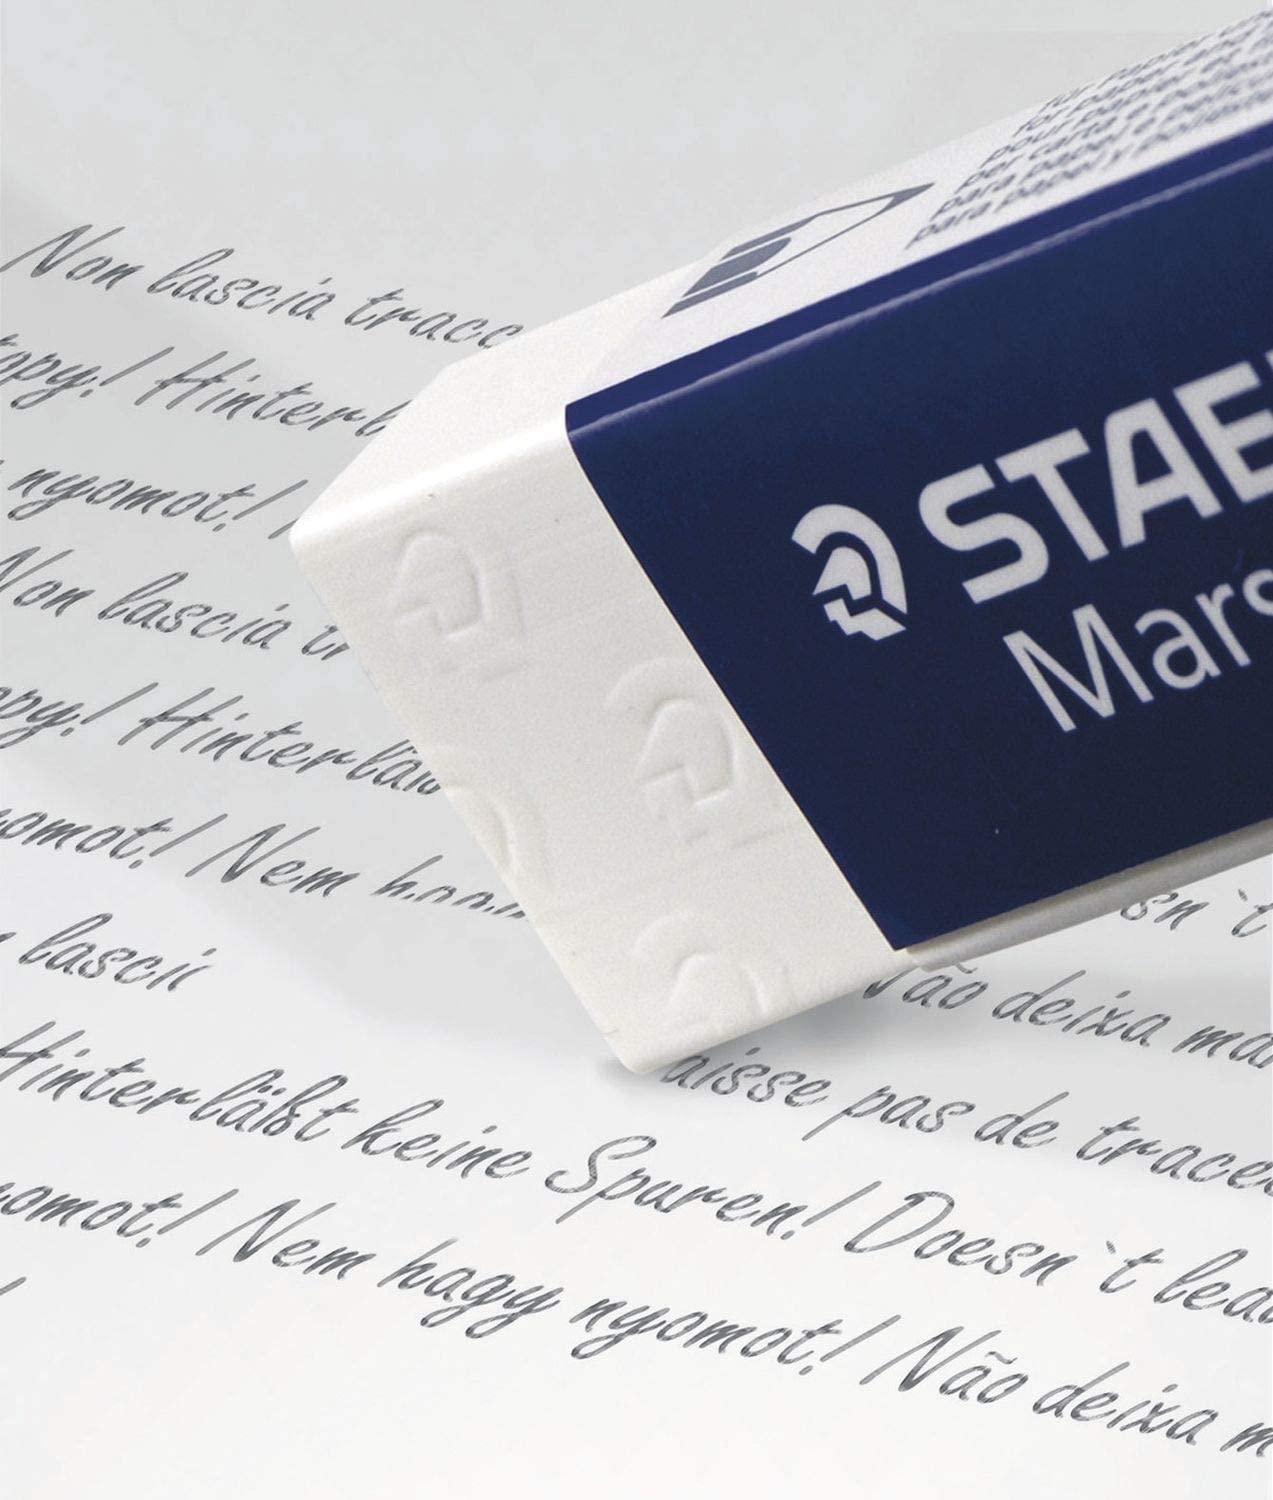 Staedtler Mars Erasers in use